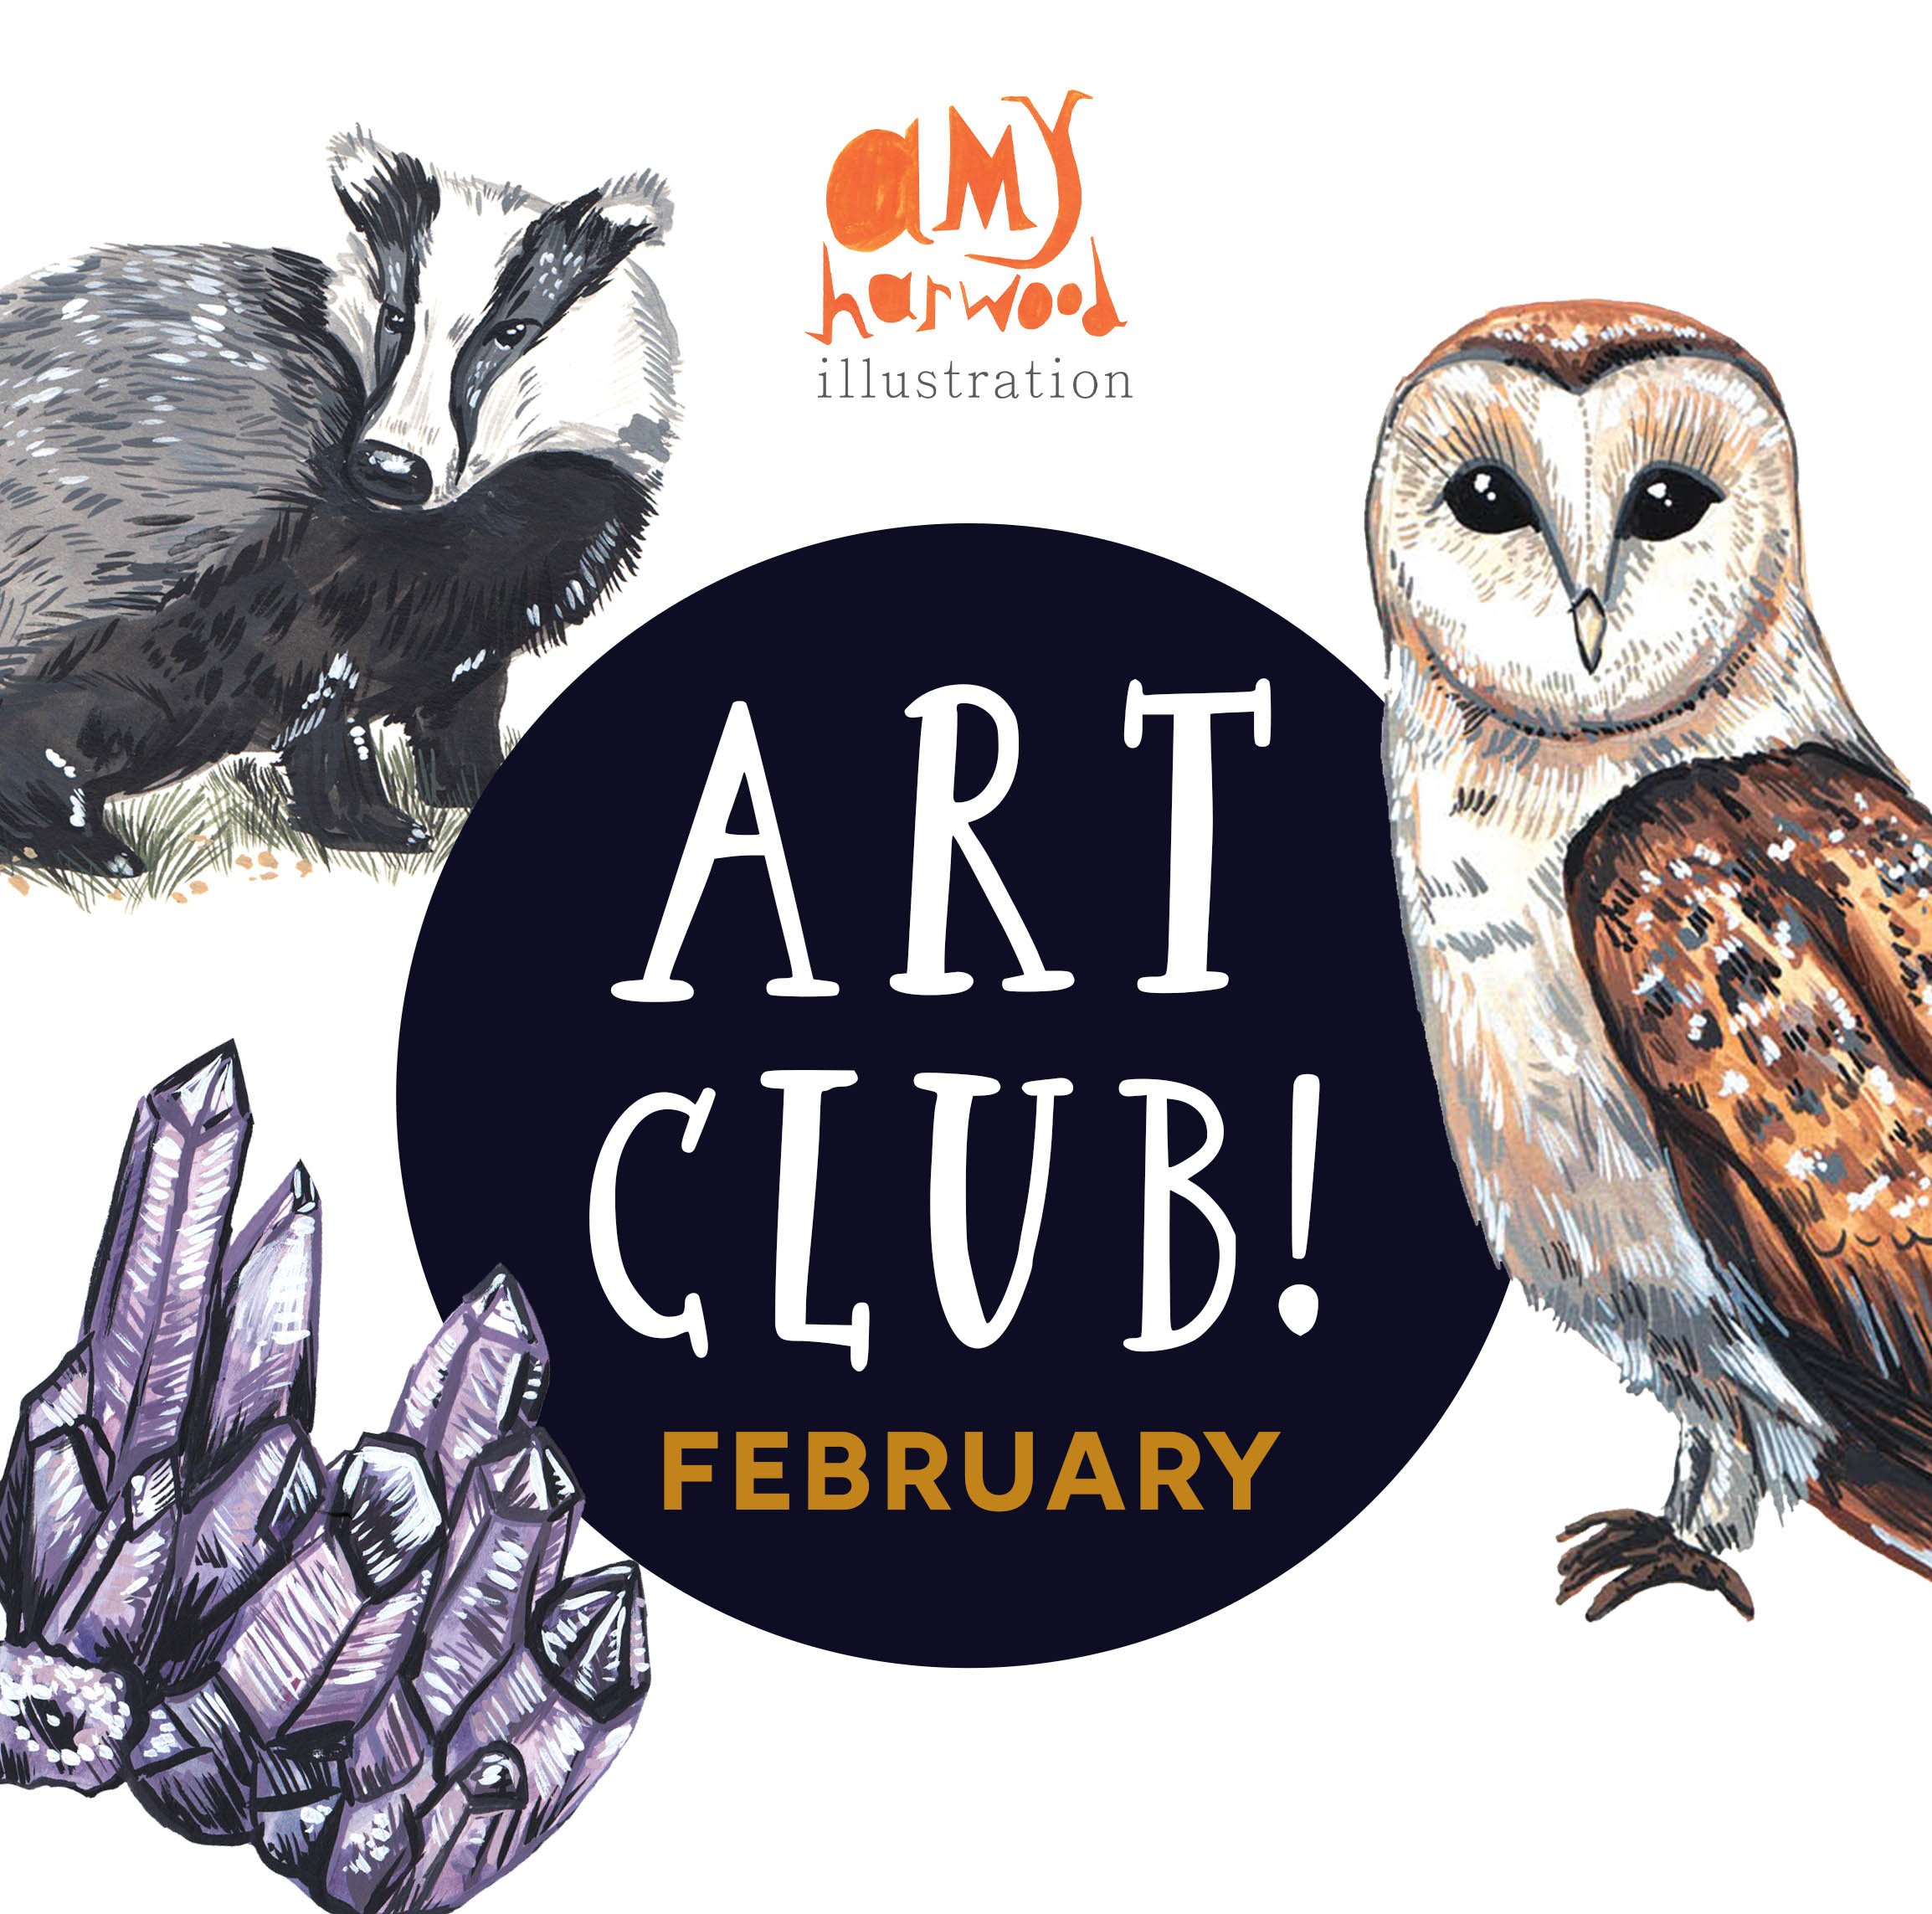 Art Club Creative-February 2.jpg